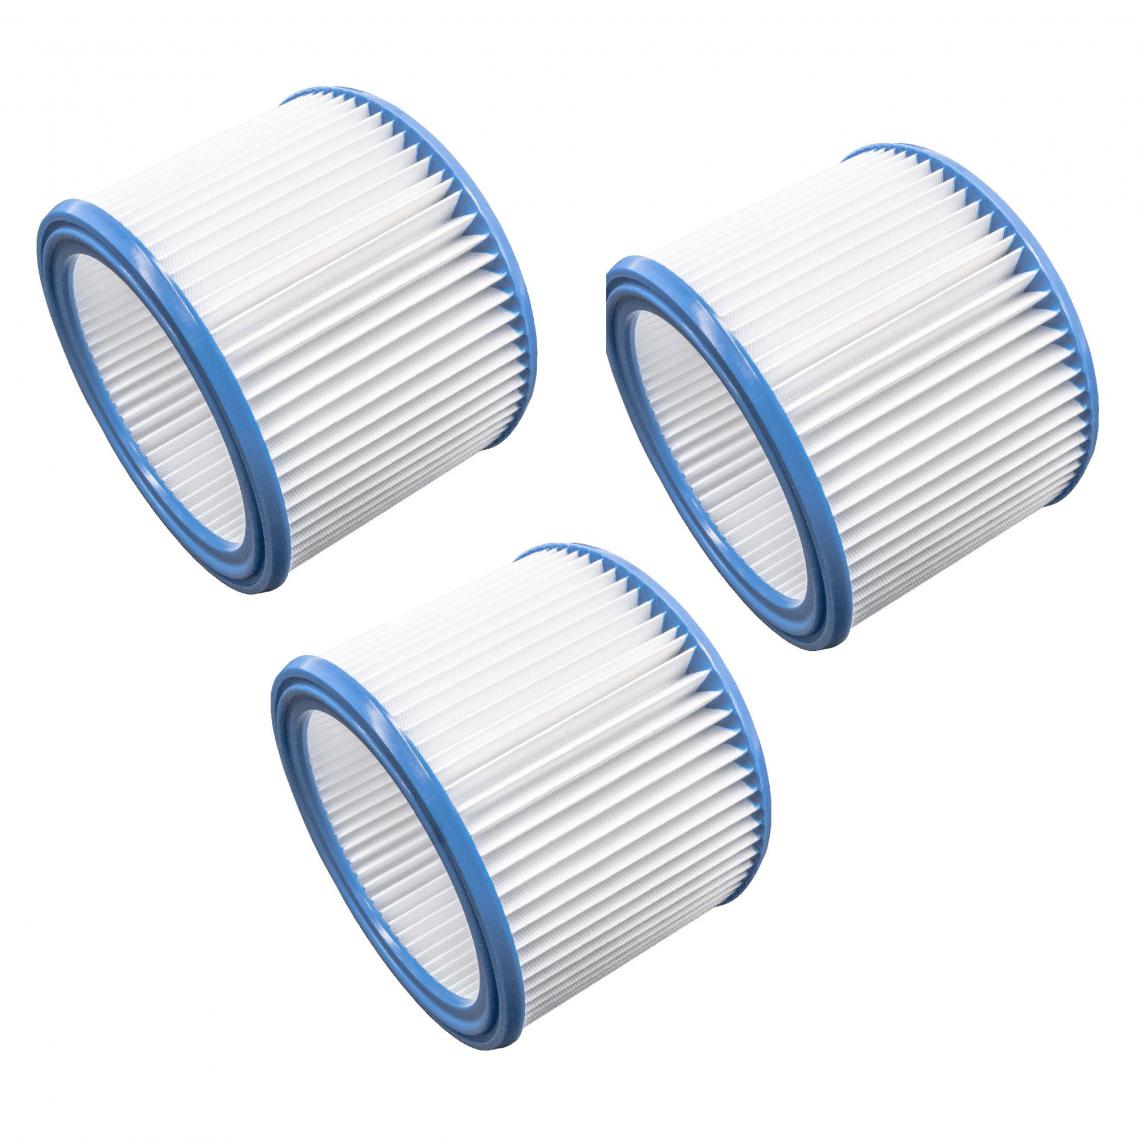 Vhbw - vhbw Set de filtres 3x Filtre plissé compatible avec Nilfisk / Alto / Wap Attix 50-21 PC, 550-01 aspirateur à sec ou humide - Filtre à cartouche - Accessoire entretien des sols